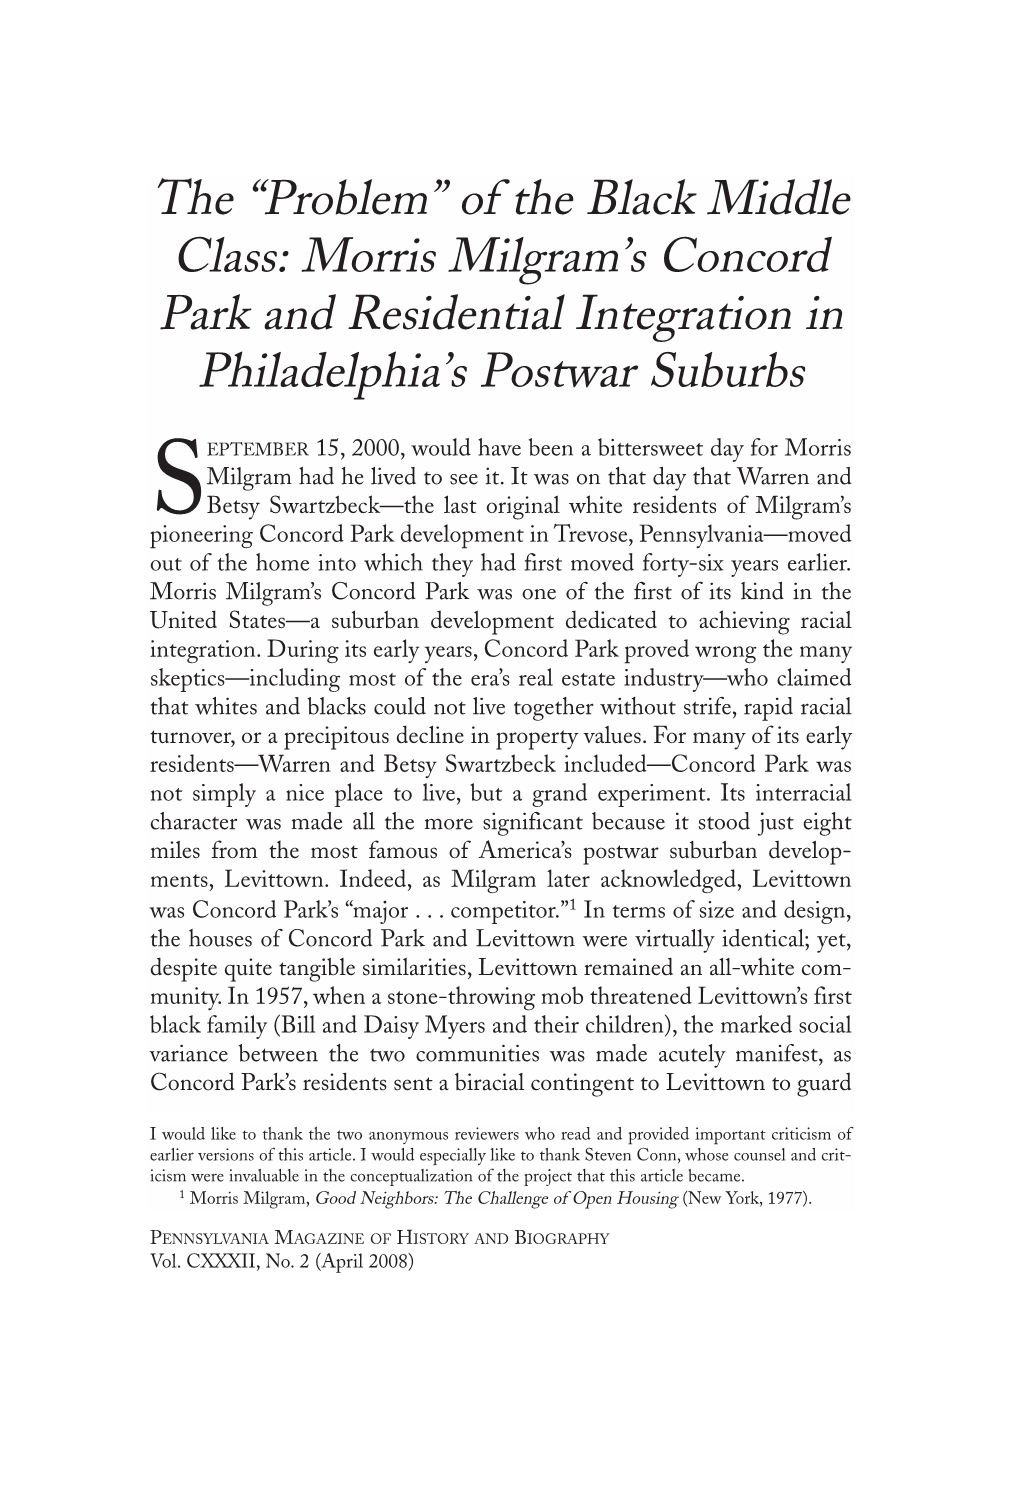 Morris Milgram's Concord Park and Residential Integration in Philadelphia's